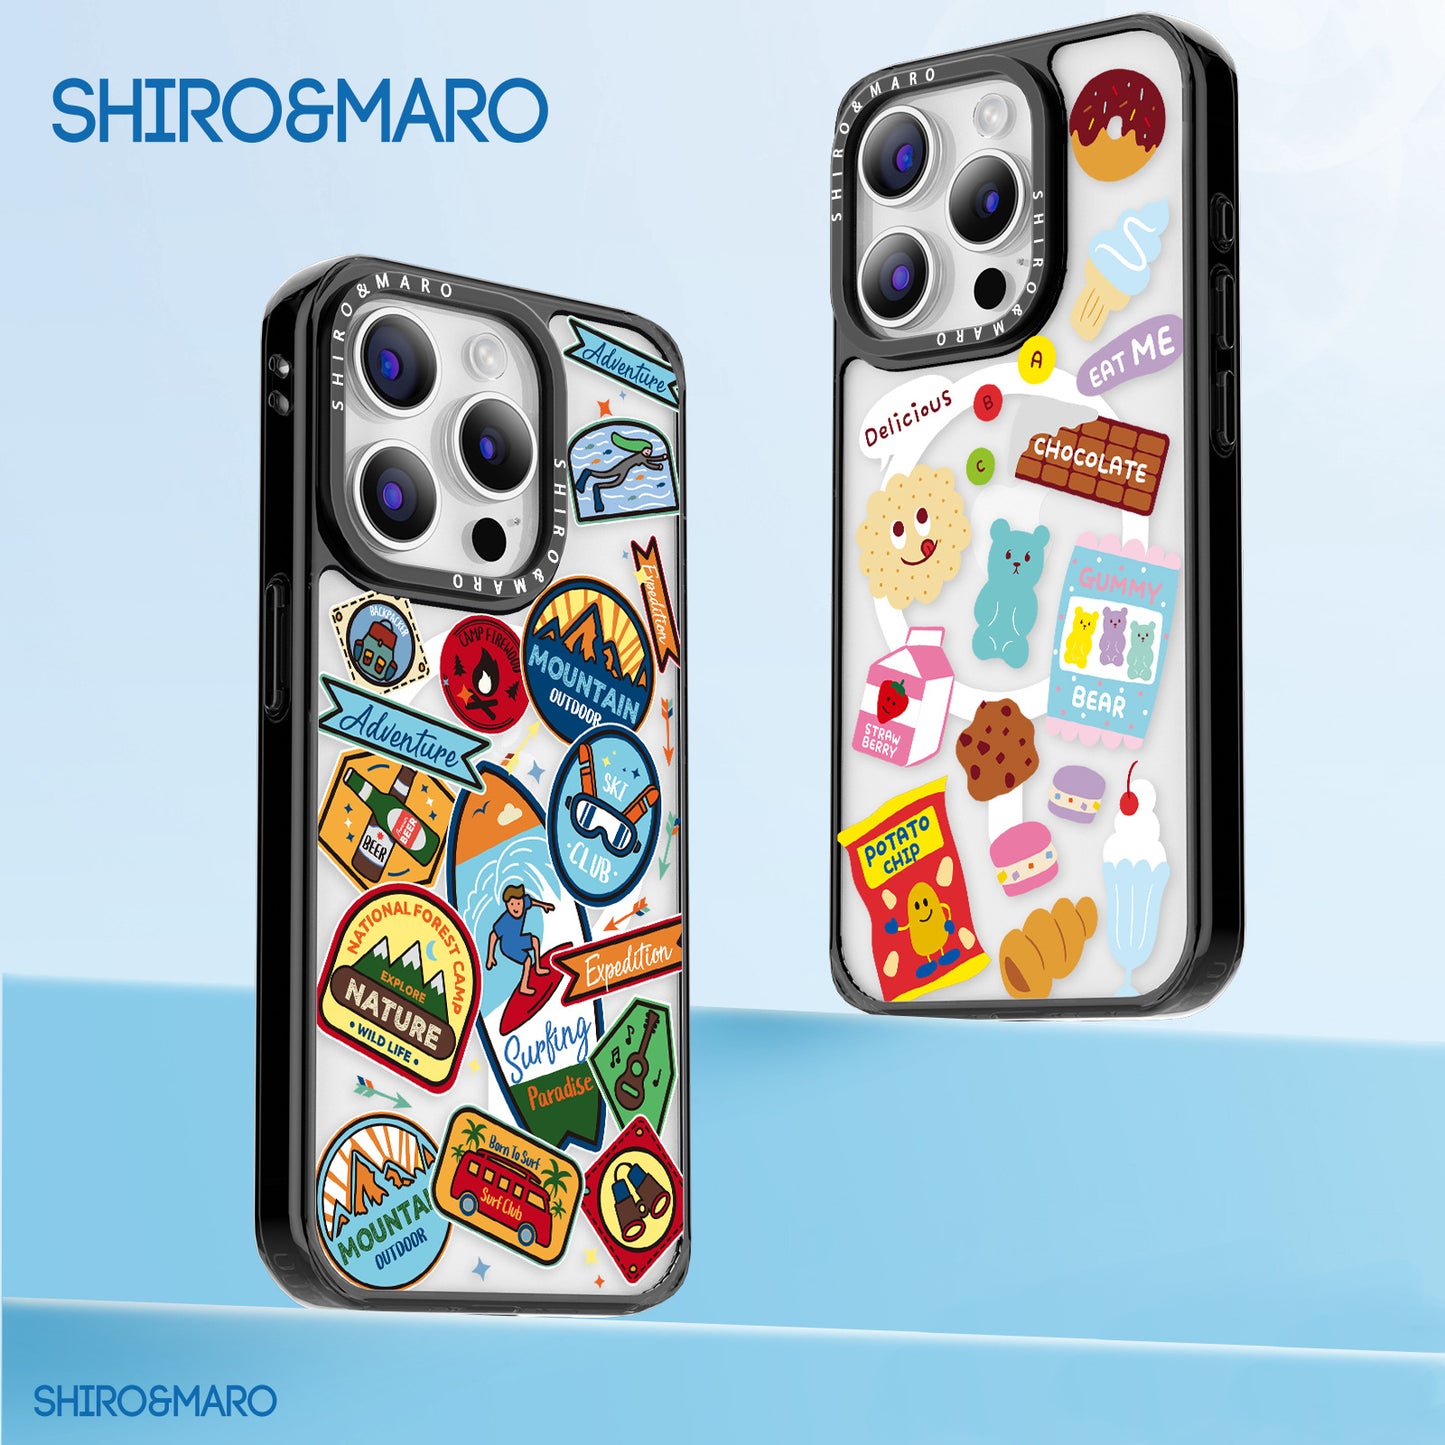 SHIRO&MARO MagSafe Shockproof Transparent Case Cover